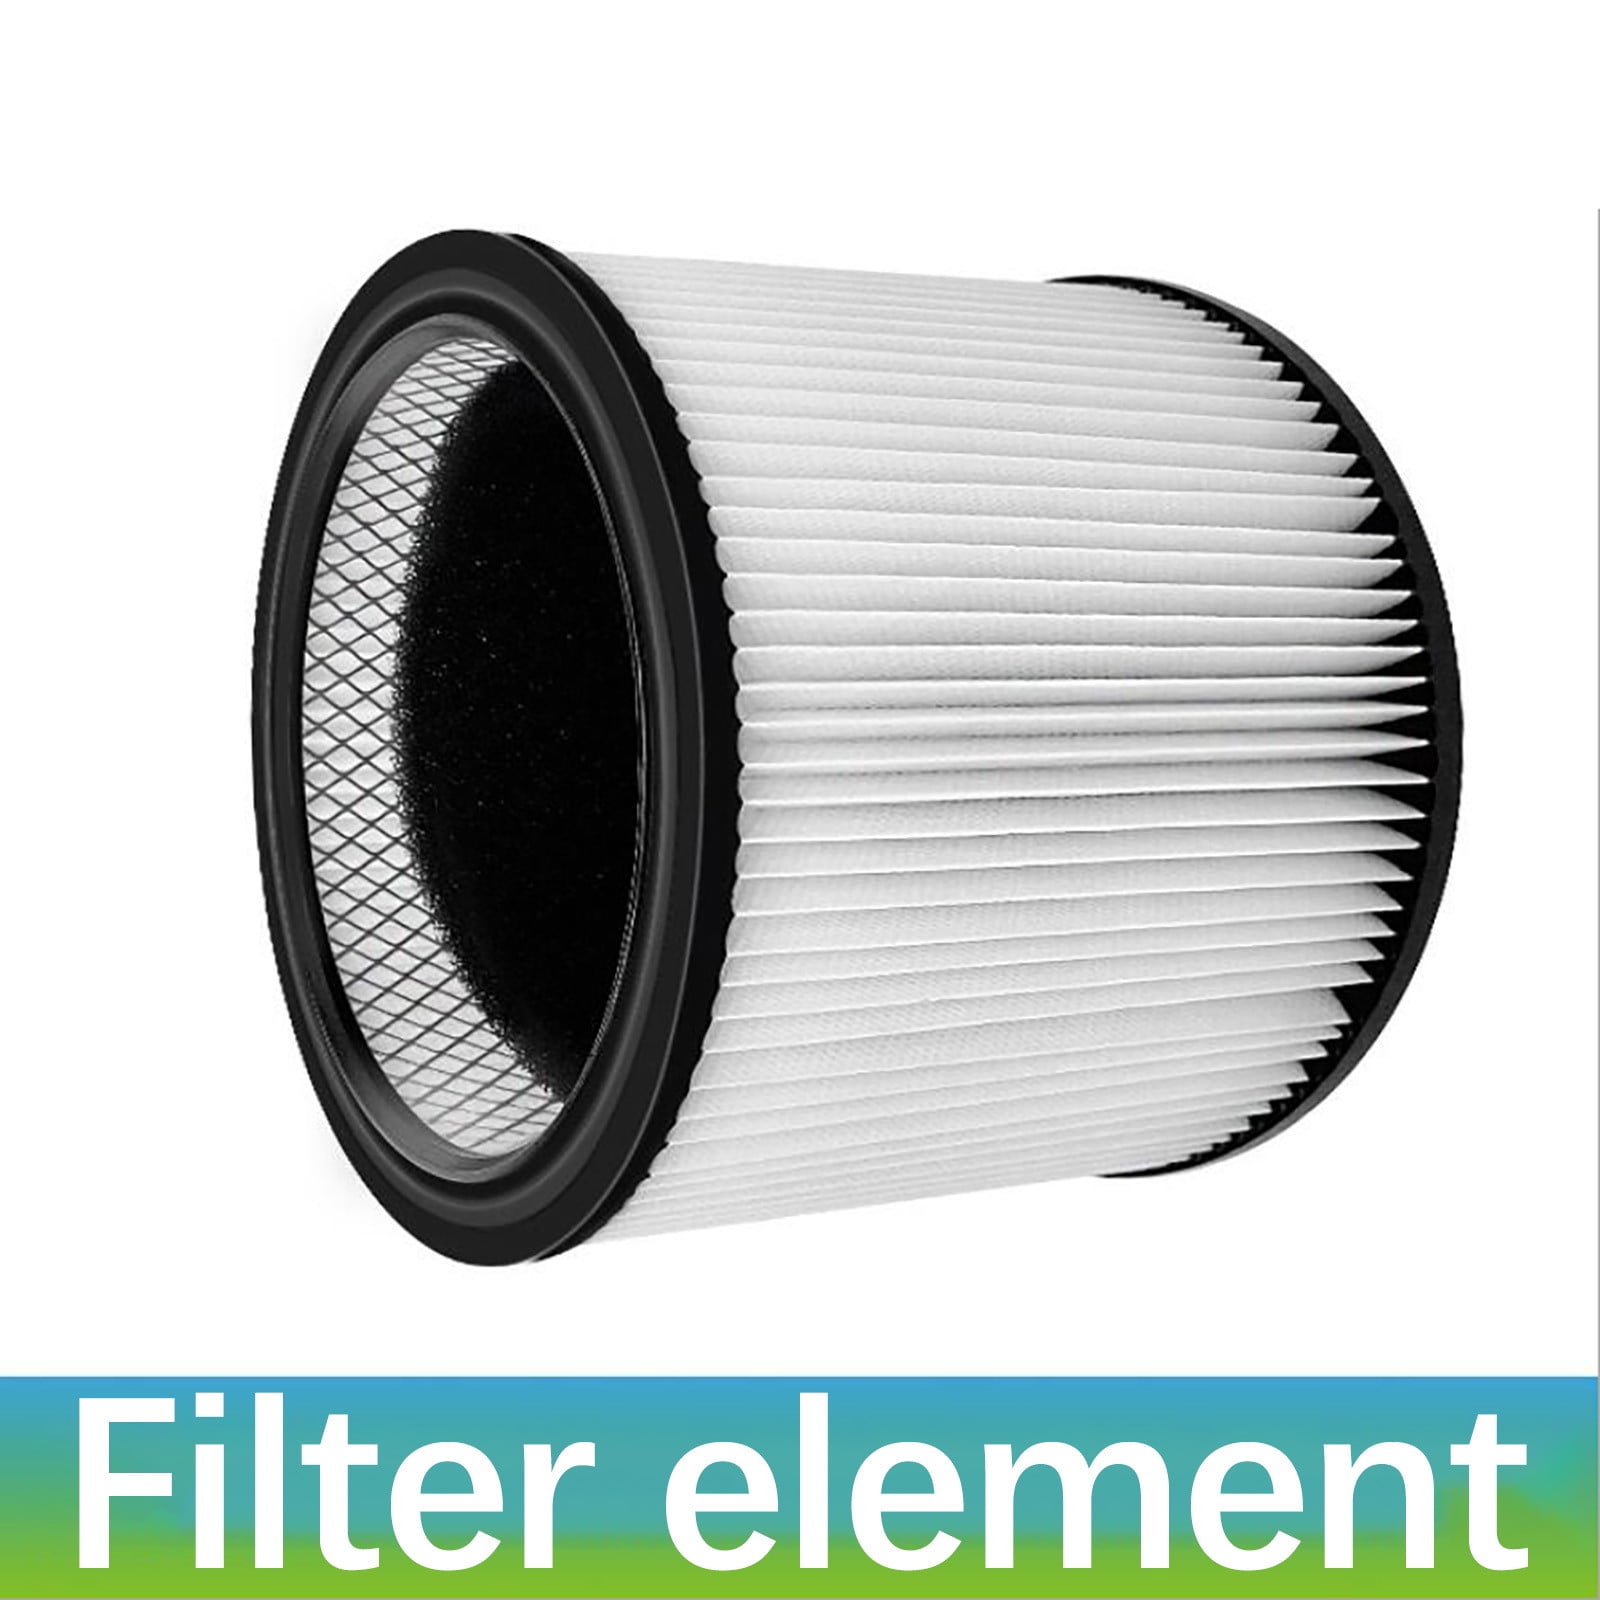 For SHOP VAC 90304 90350 90333 LB650 QPL Vacuum Cleaner Filter Element Filter